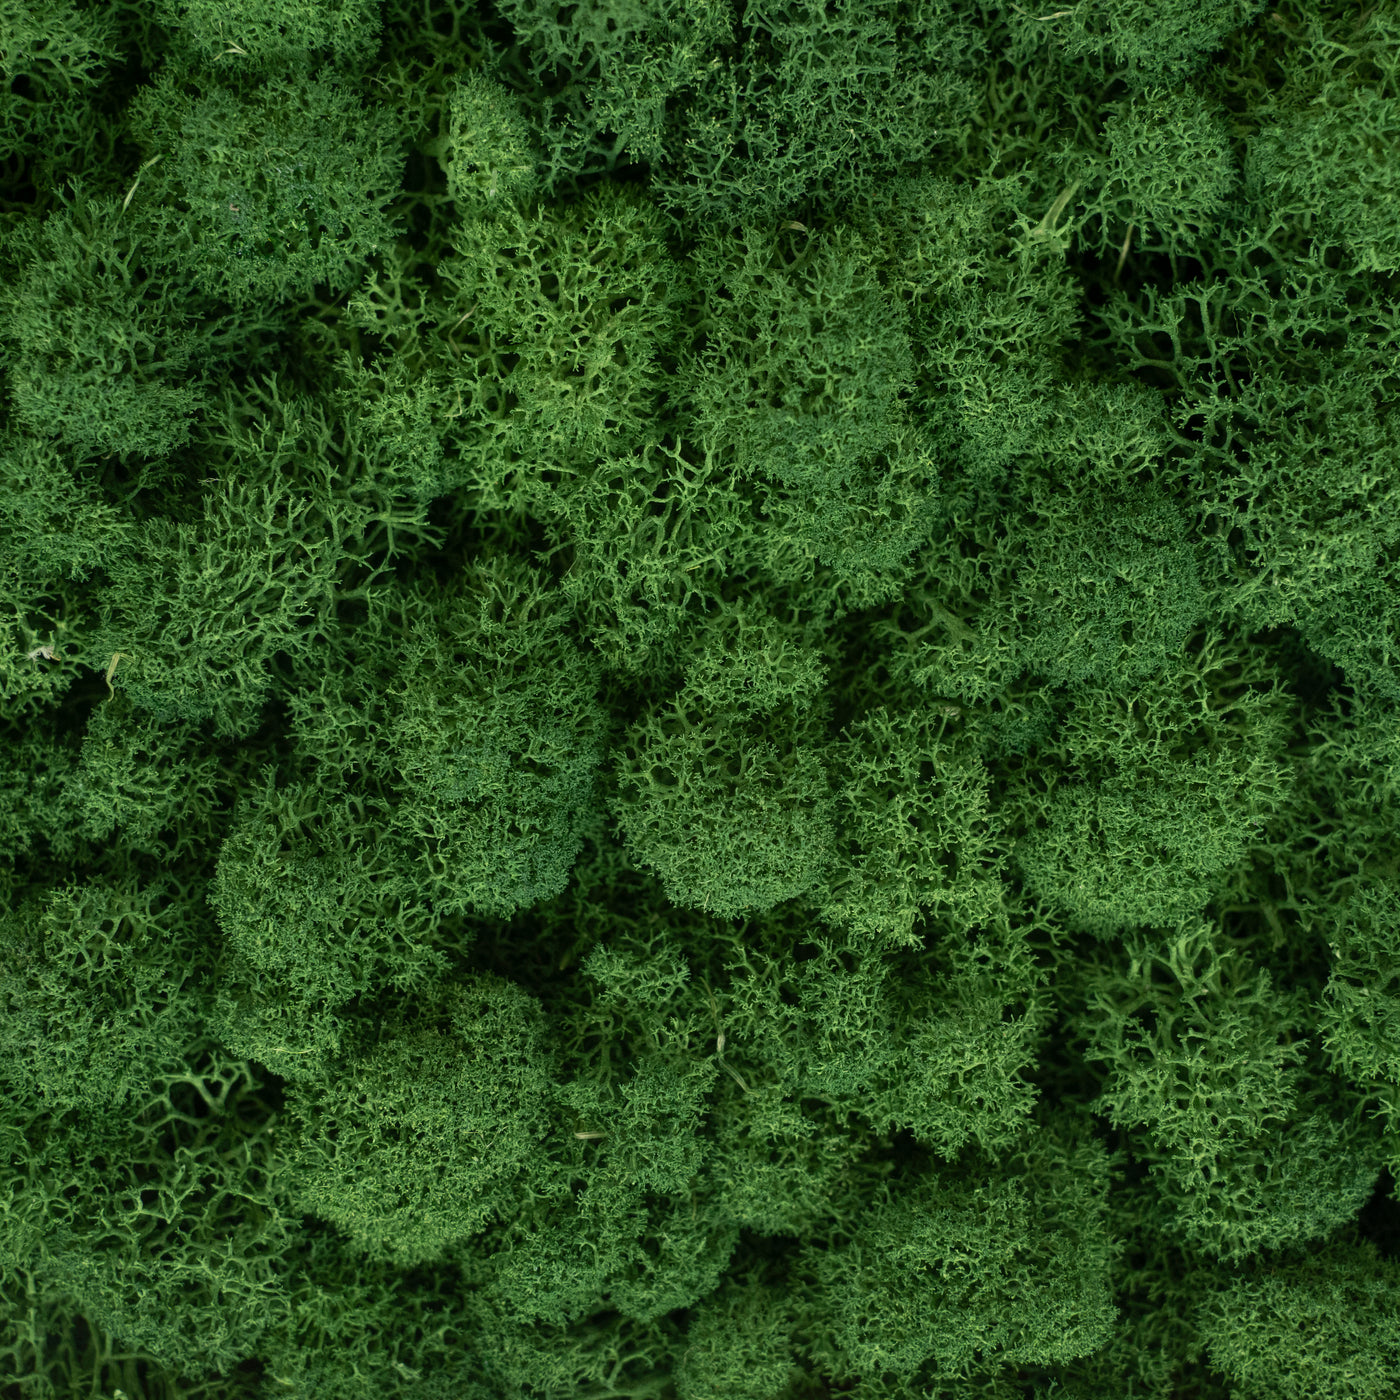 Panou licheni conservati 30x30 cm verde broccoli RR37